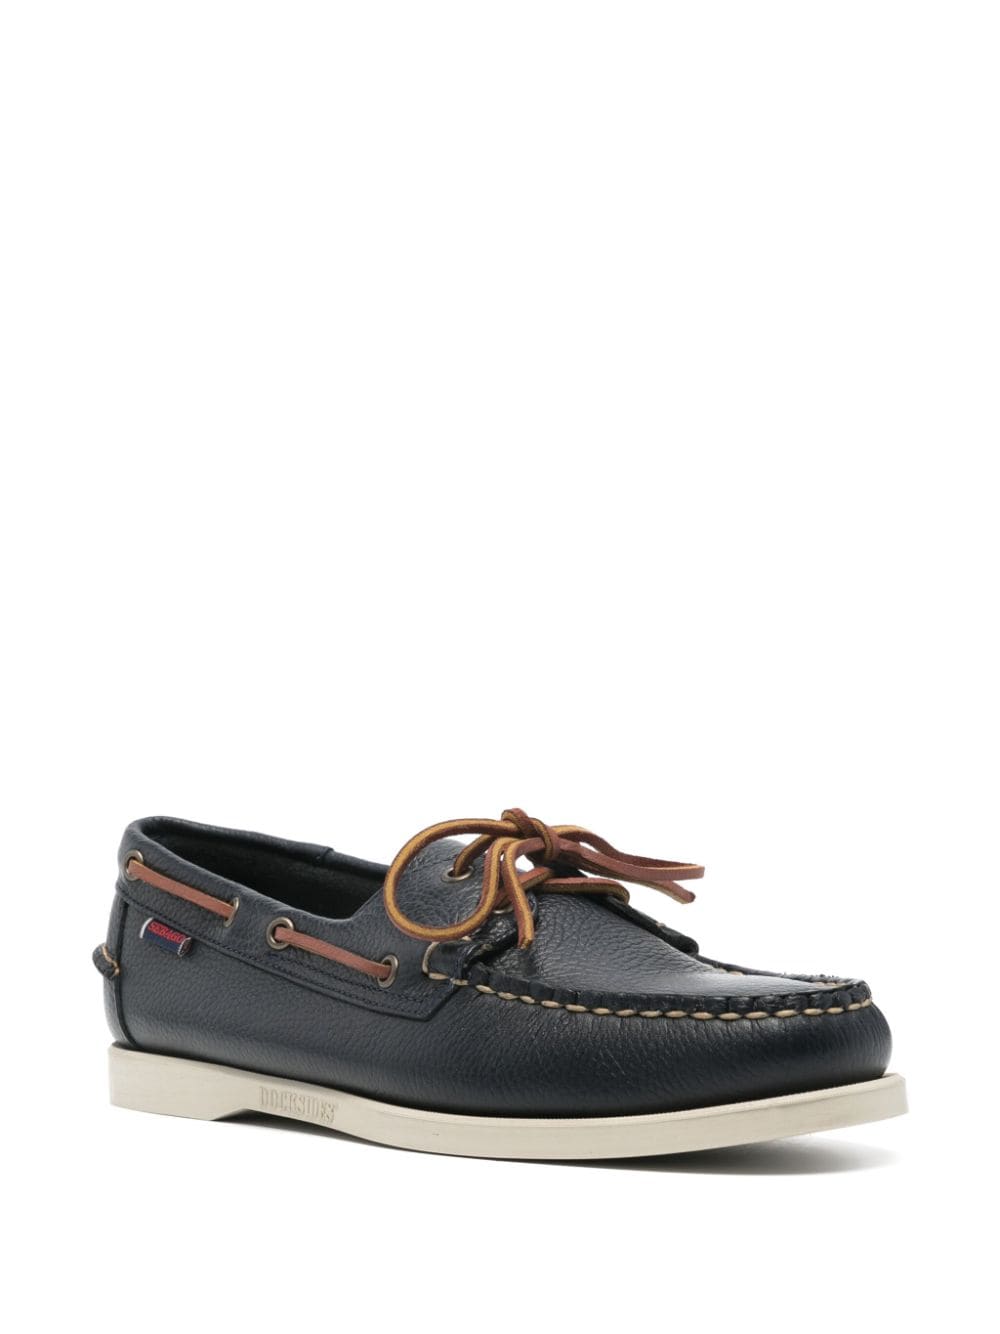 Sebago Portland Martellato leather boat shoes - Blauw